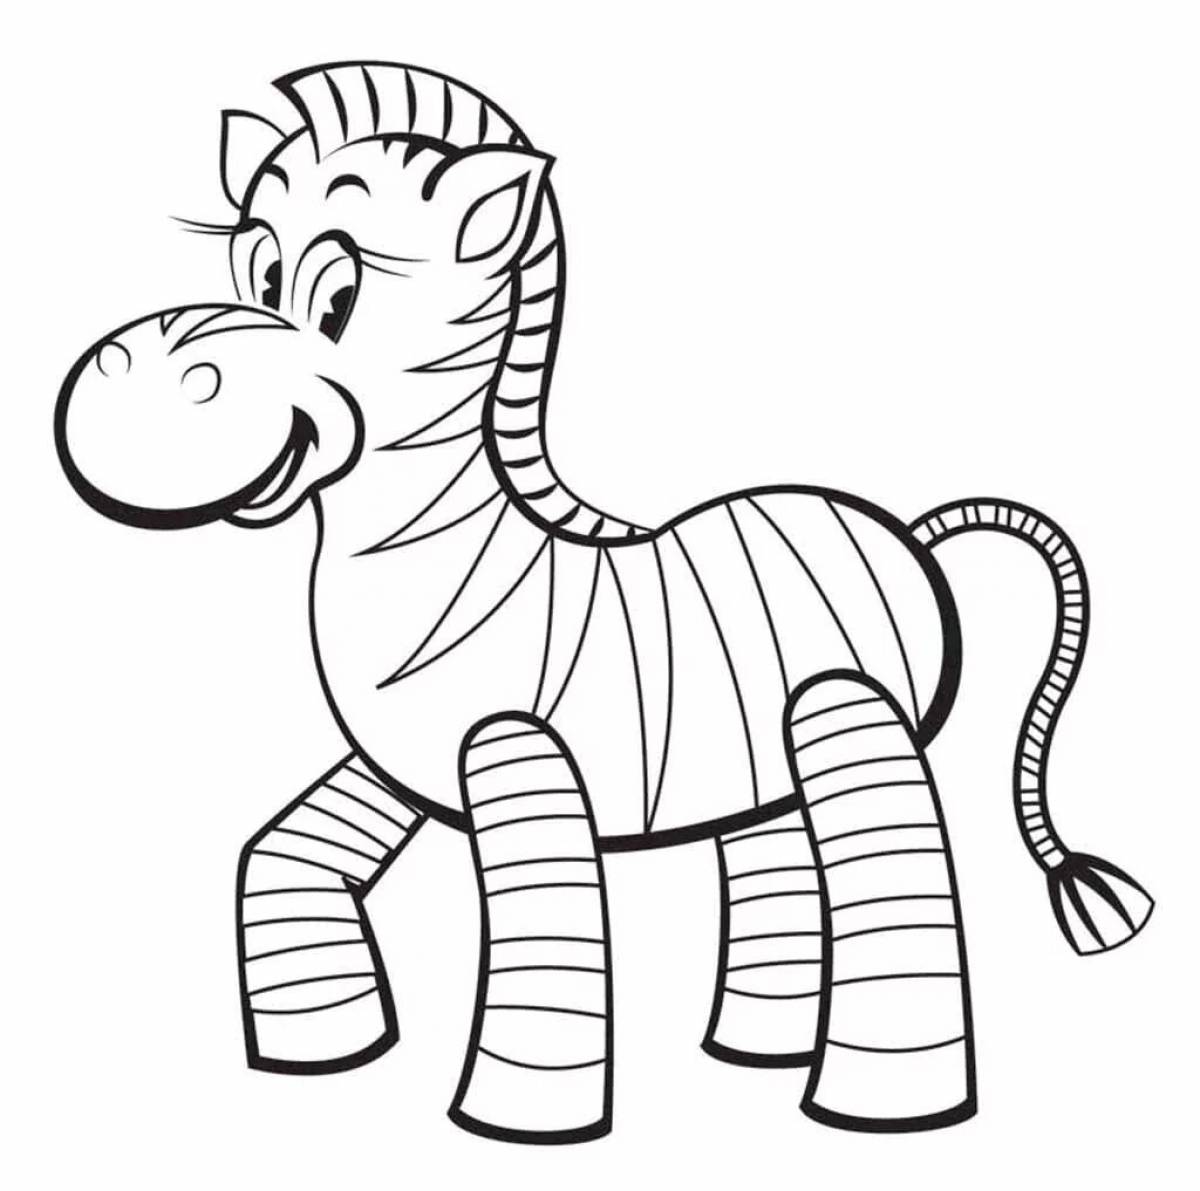 Незабываемая раскраска зебра для детей 3-4 лет